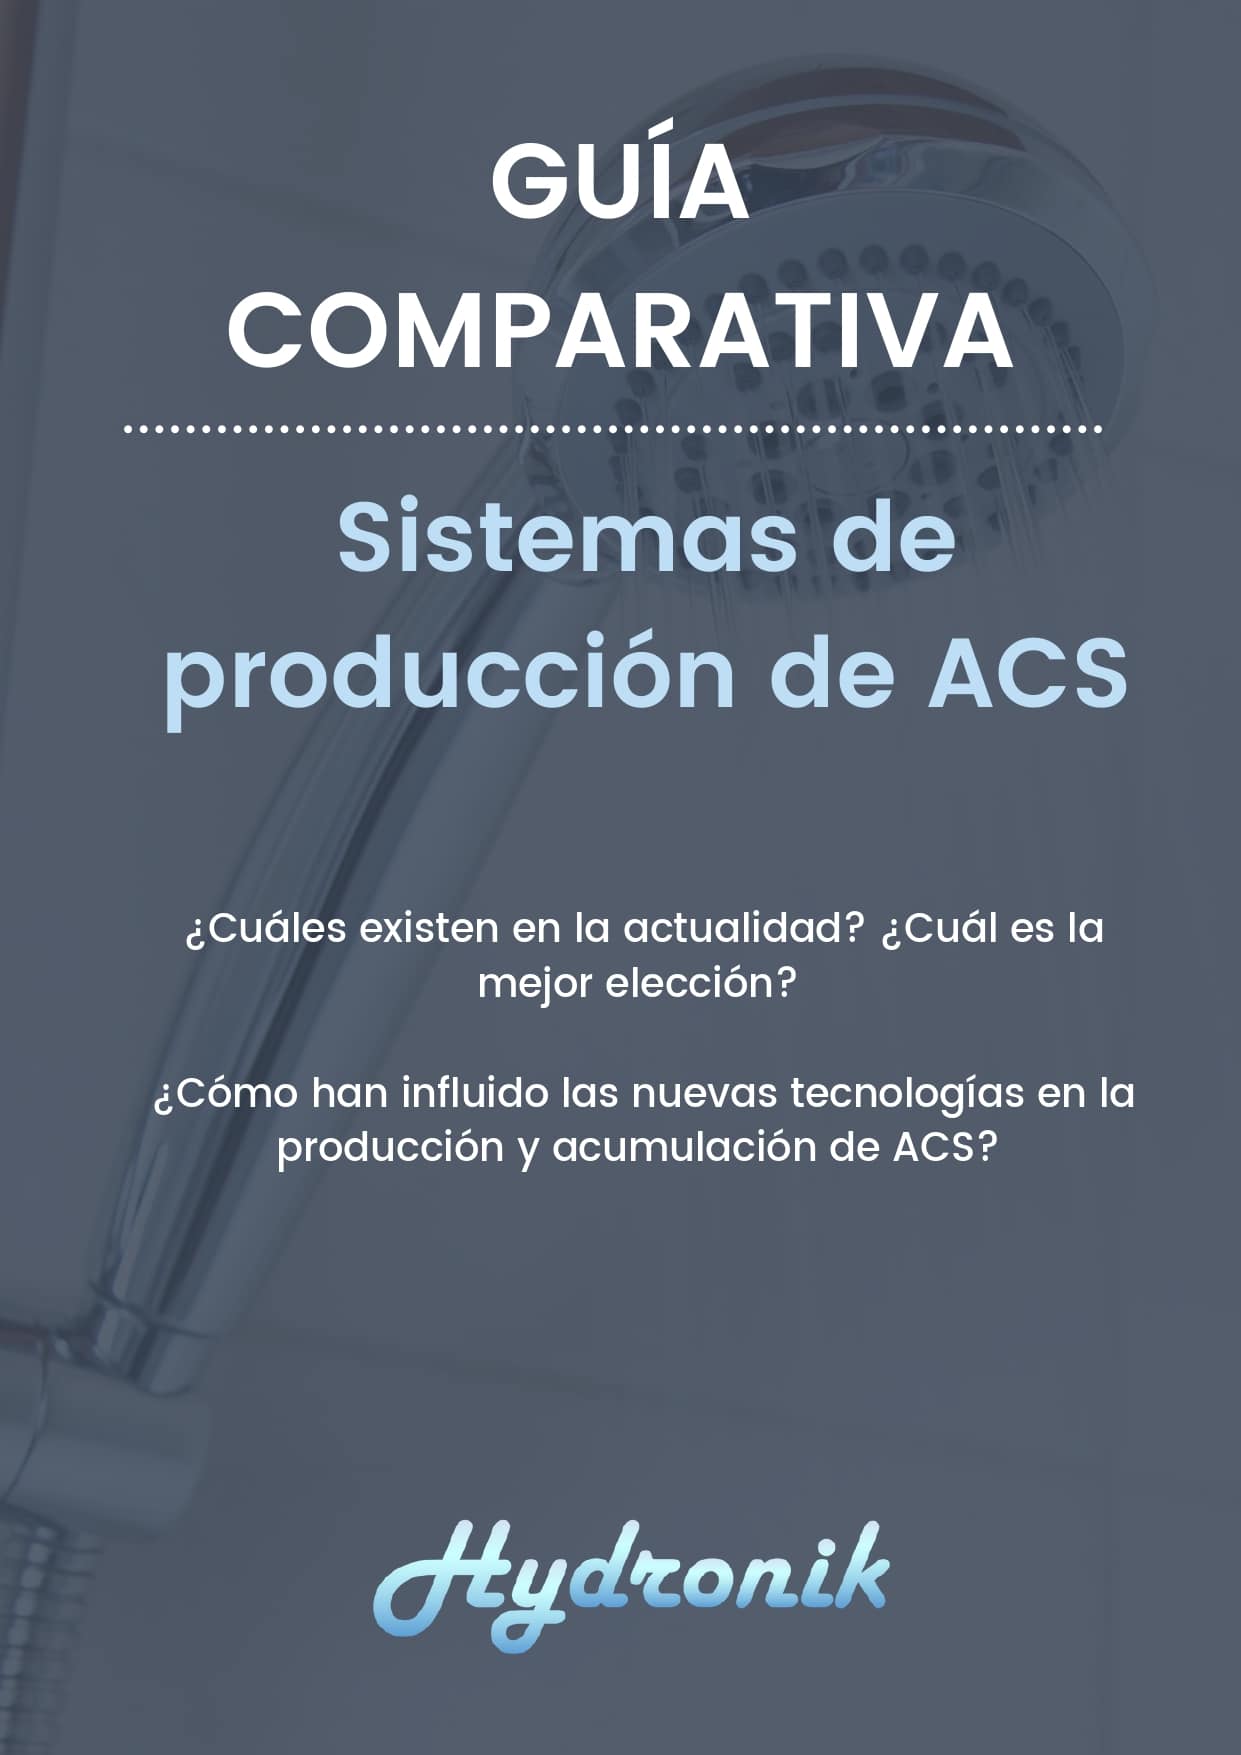 Guia comparativa Sistemas de producccion ACS page 0001